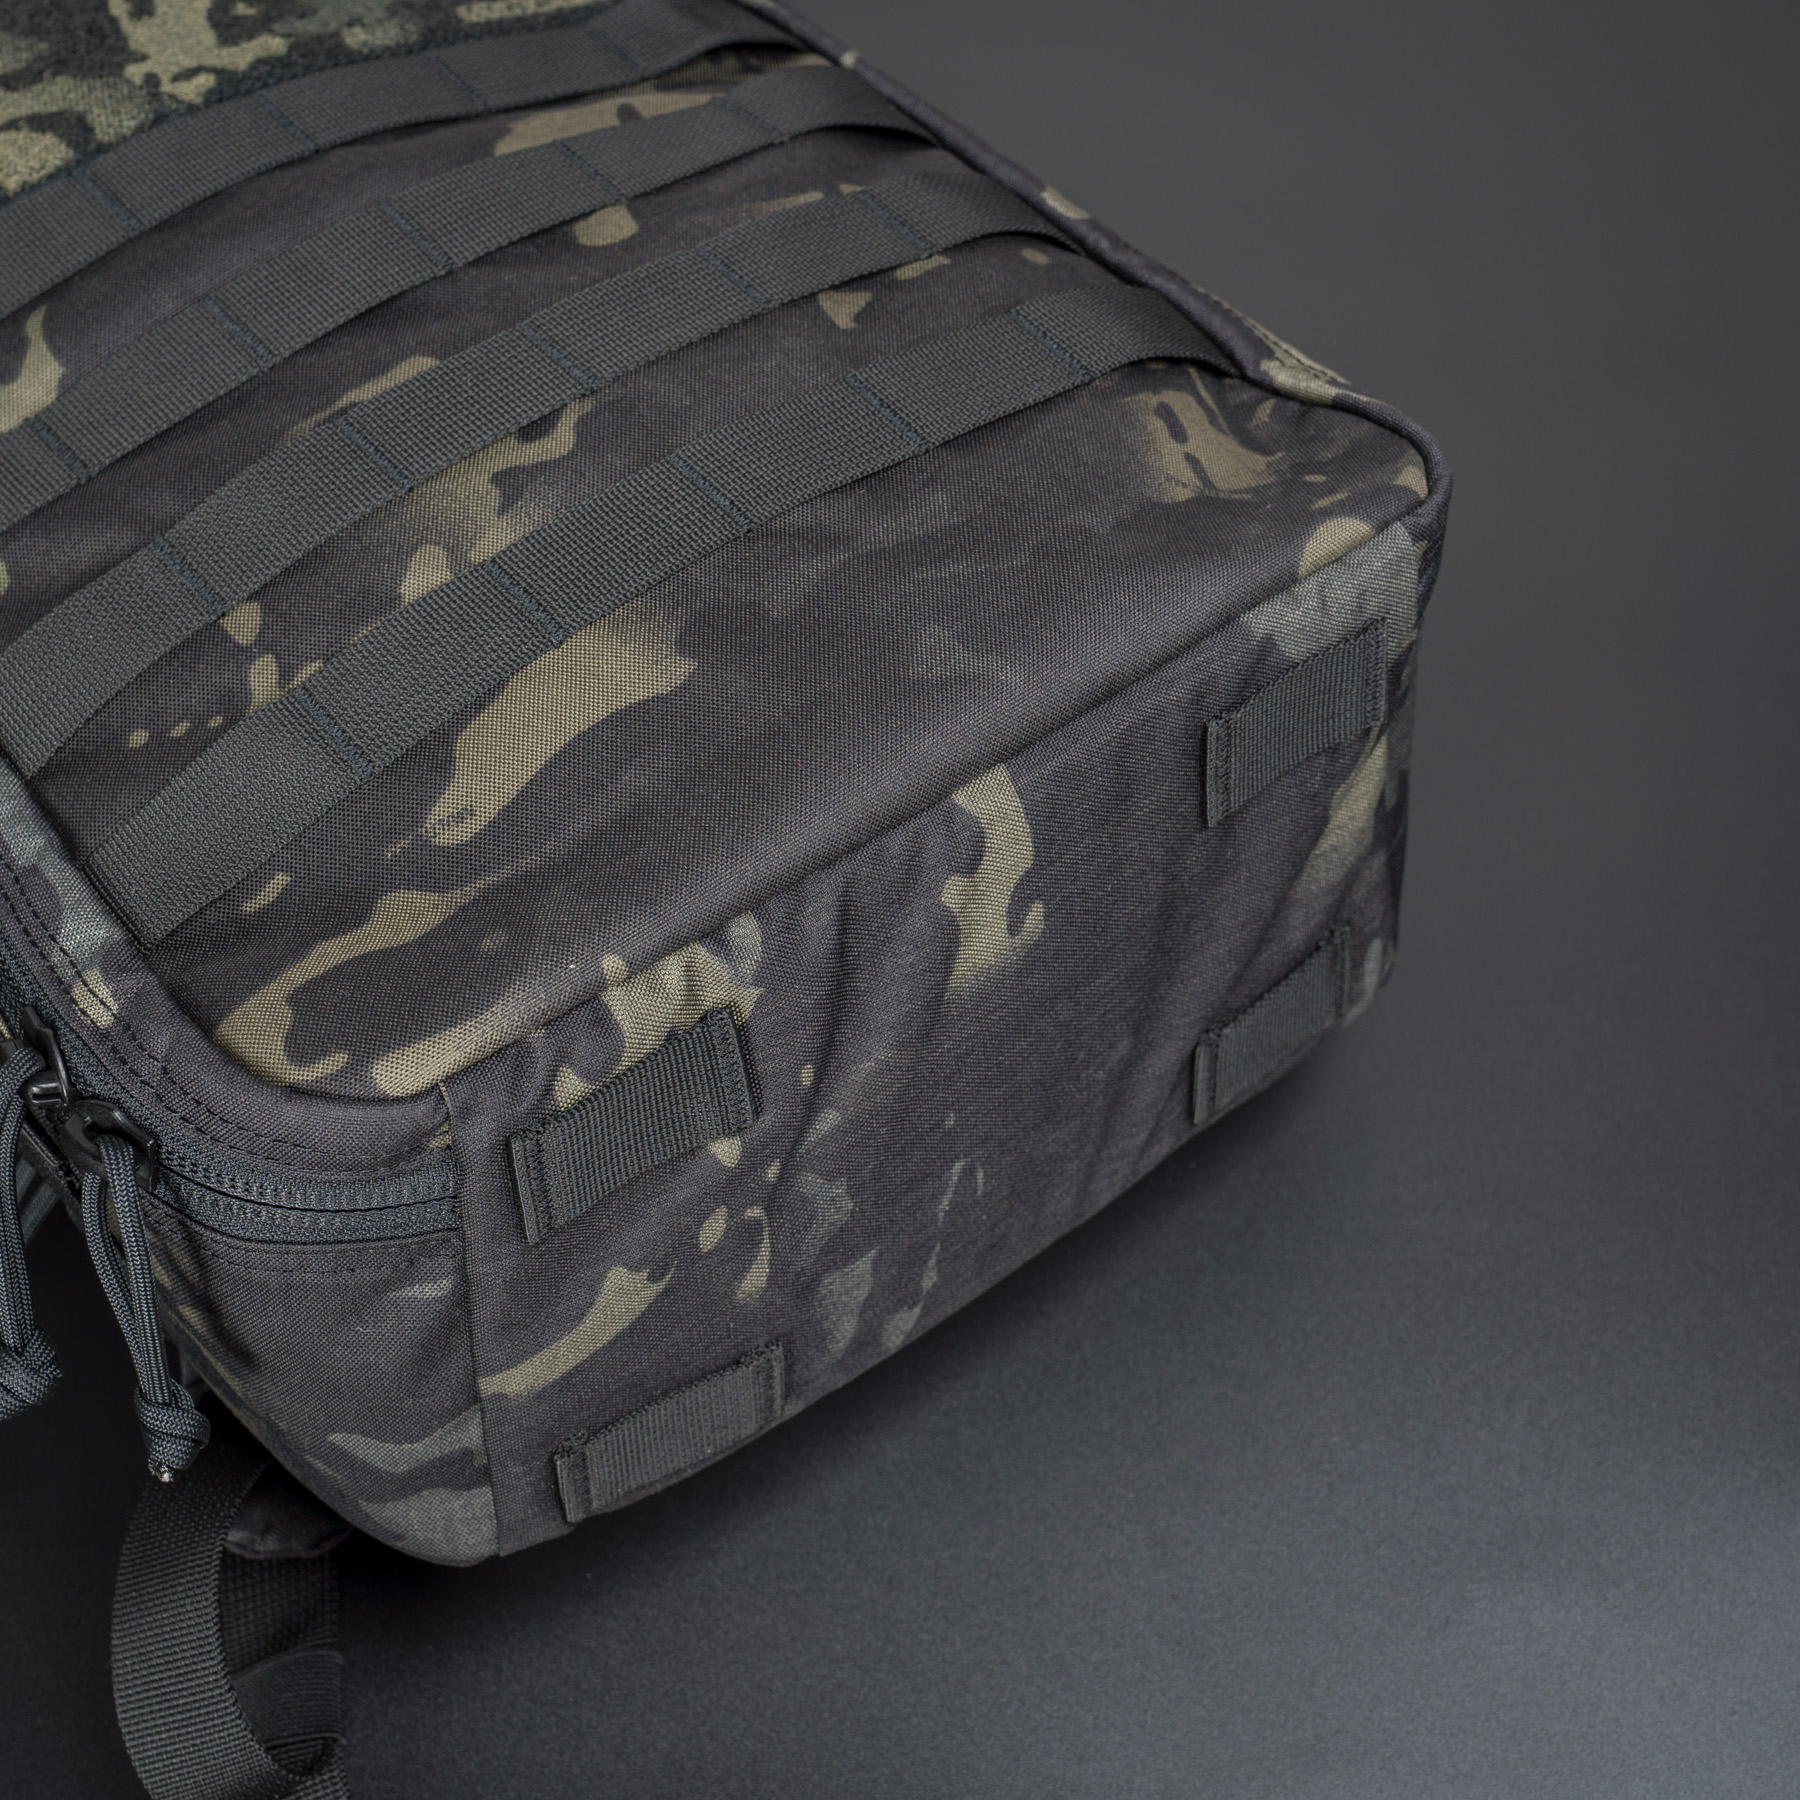 balo CT-15 backpack v2.0